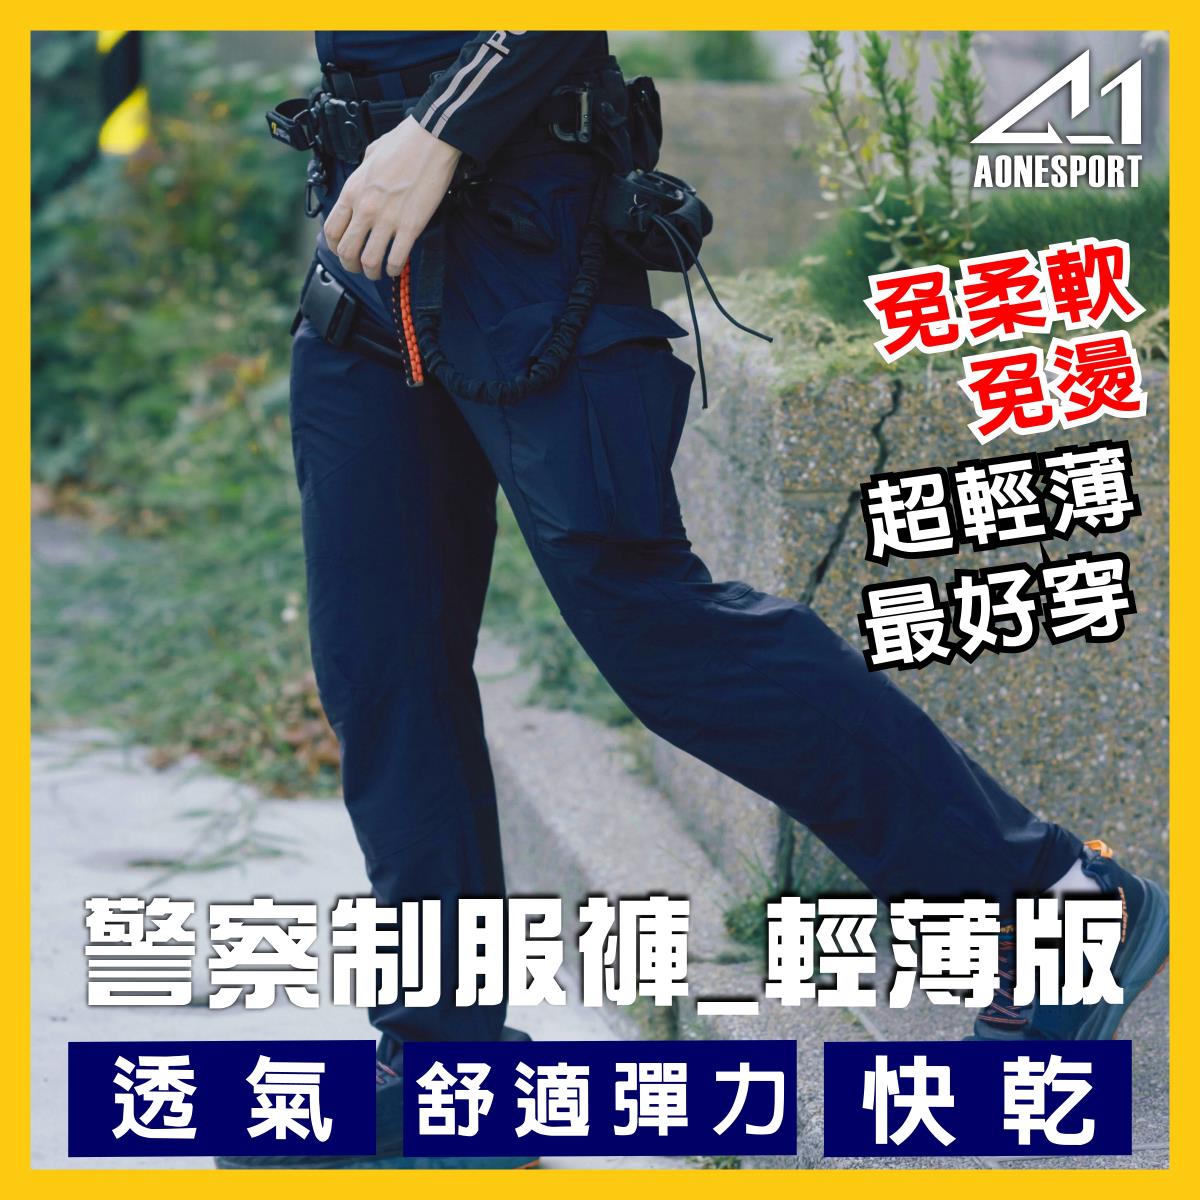 警察制服褲_輕薄版-81018-兩件套組,佳豐有限公司